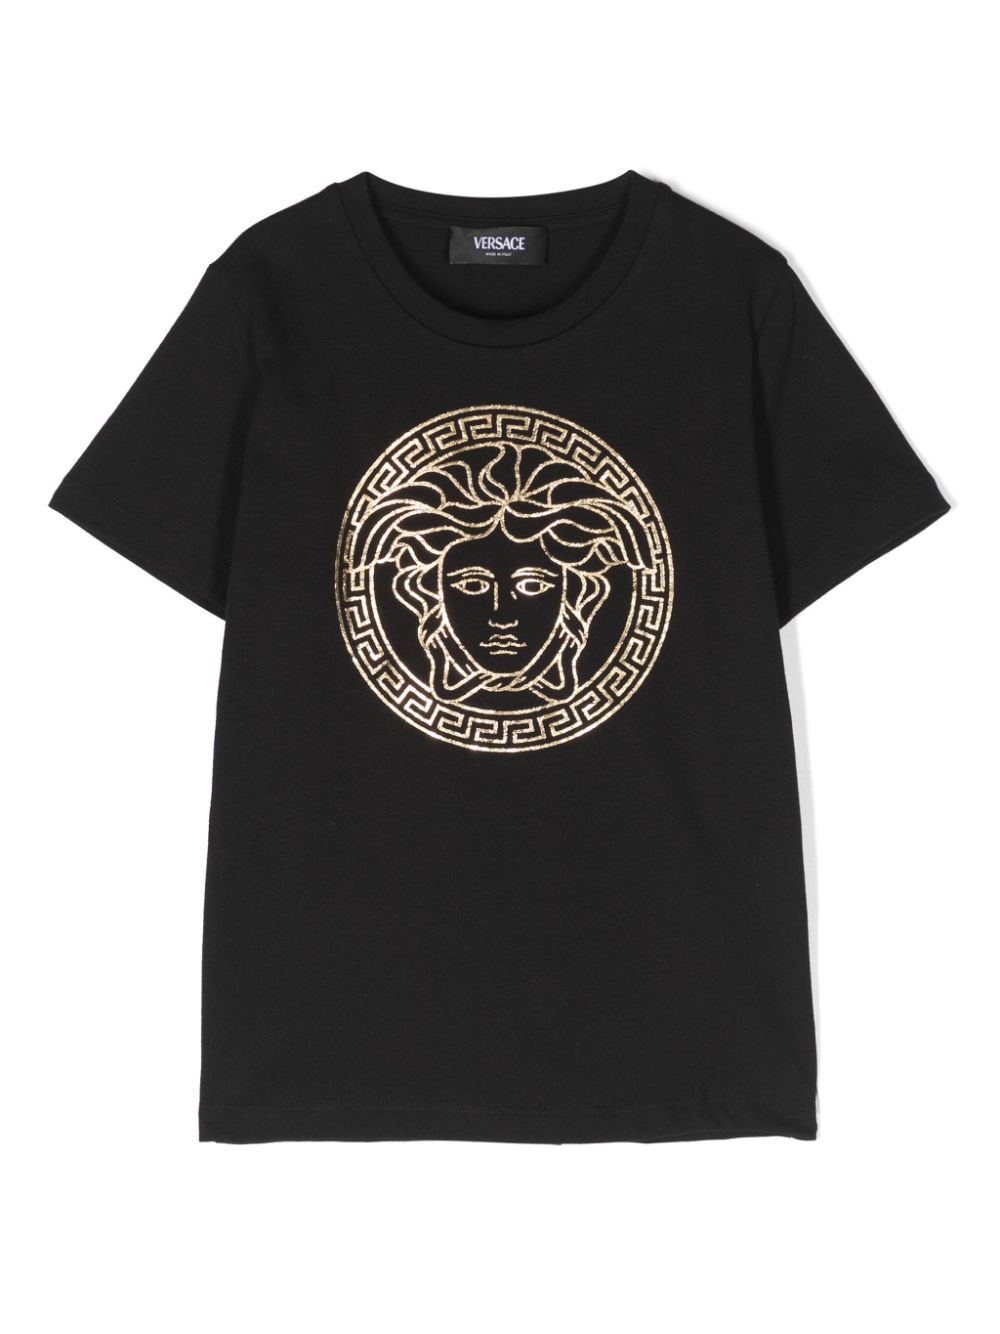 T-shirt nera per bambini con logo oro